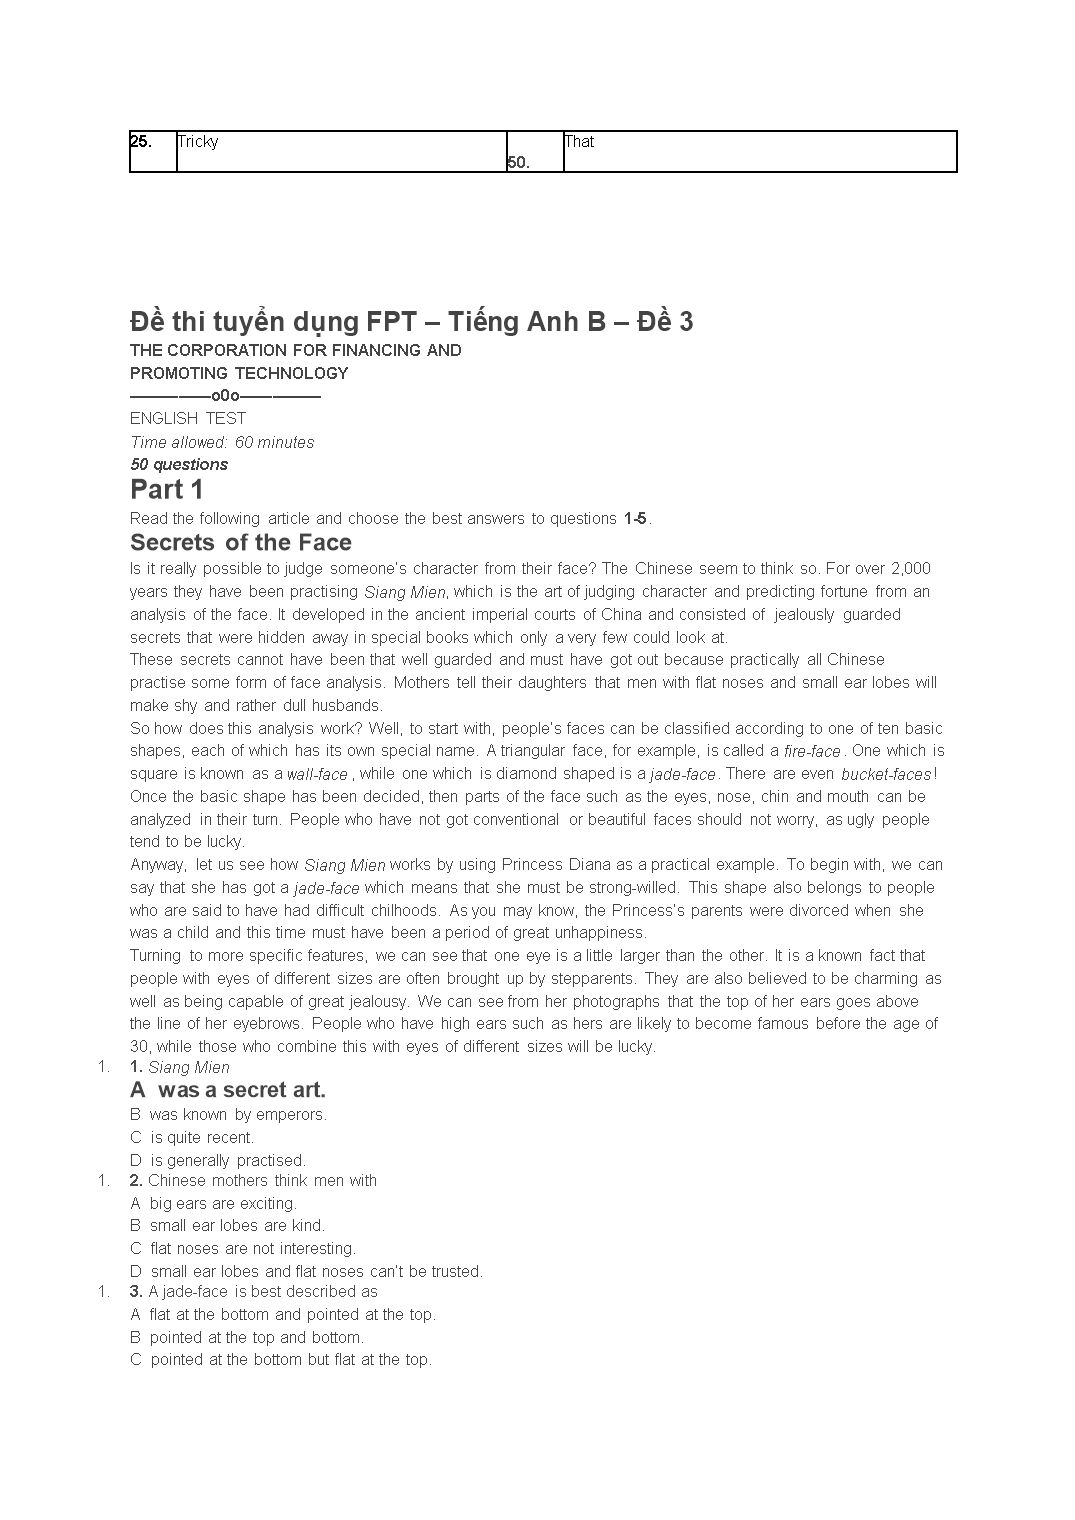 Đề thi tuyển dụng FPT – Tiếng anh B – Đề 1 trang 8